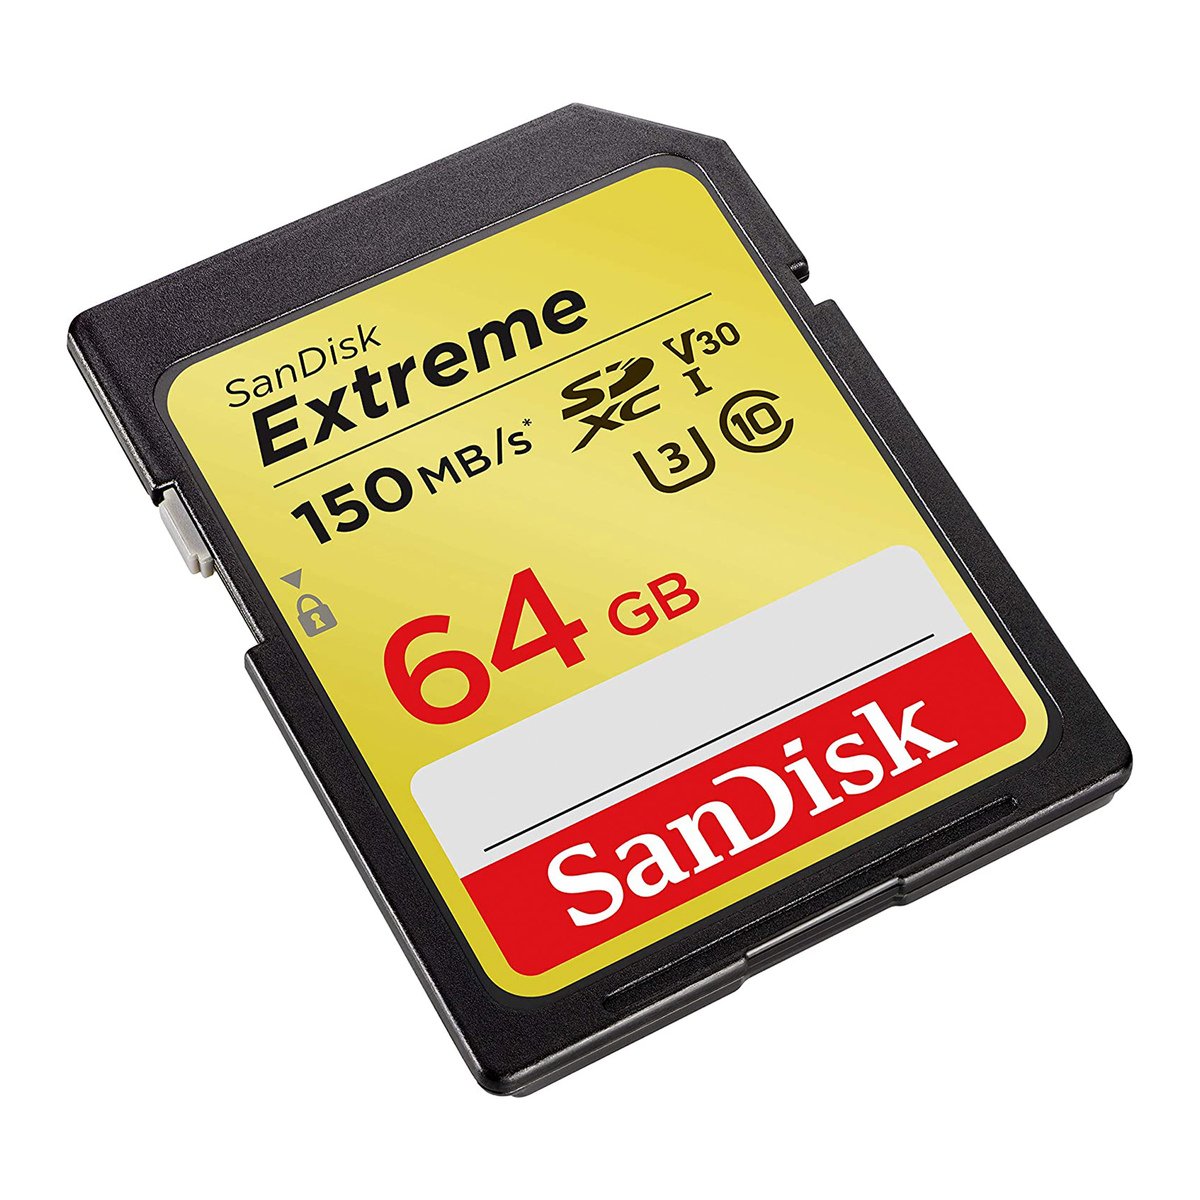 بطاقة ذاكرة إكستريم SDHC بسرعةٍ تصل إلى 150 ميجابايت في الثانية، UHS-I، الفئة 10، U3, V30 - بسعة 64 جيجابايت